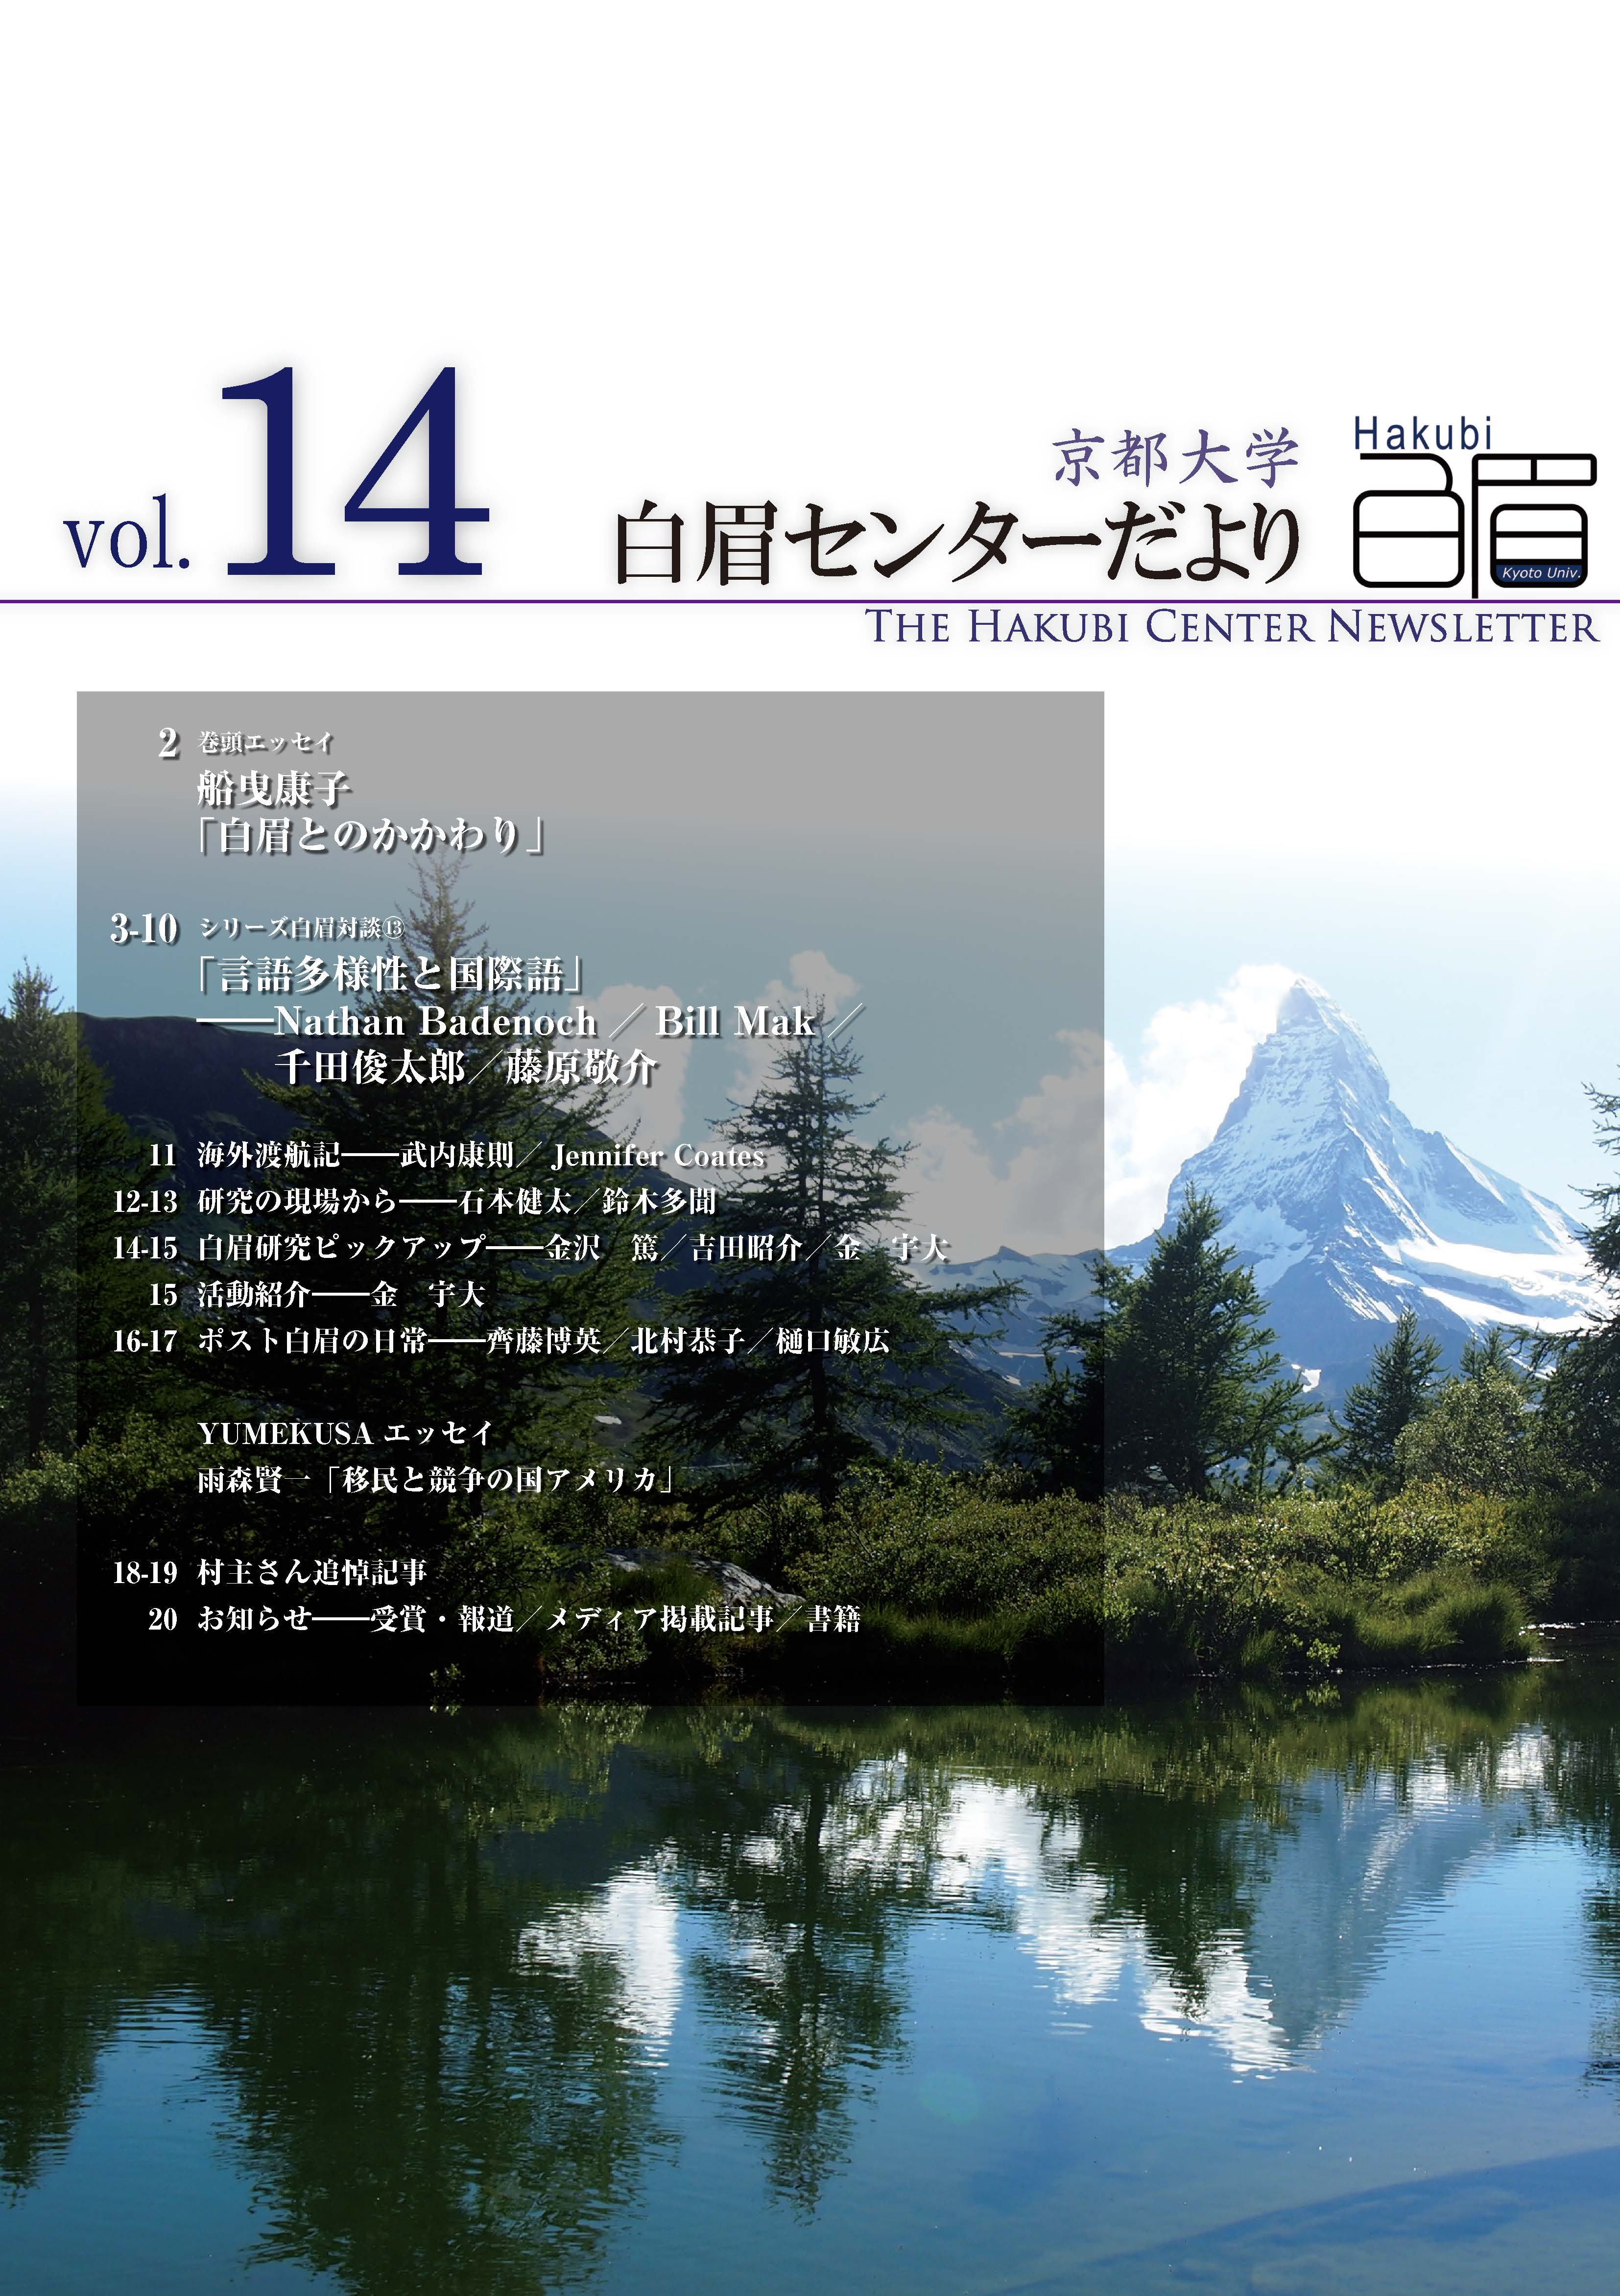 The Kyoto University Hakubi Center Newsletter, Vol. 14 (in Japanese) (2018)